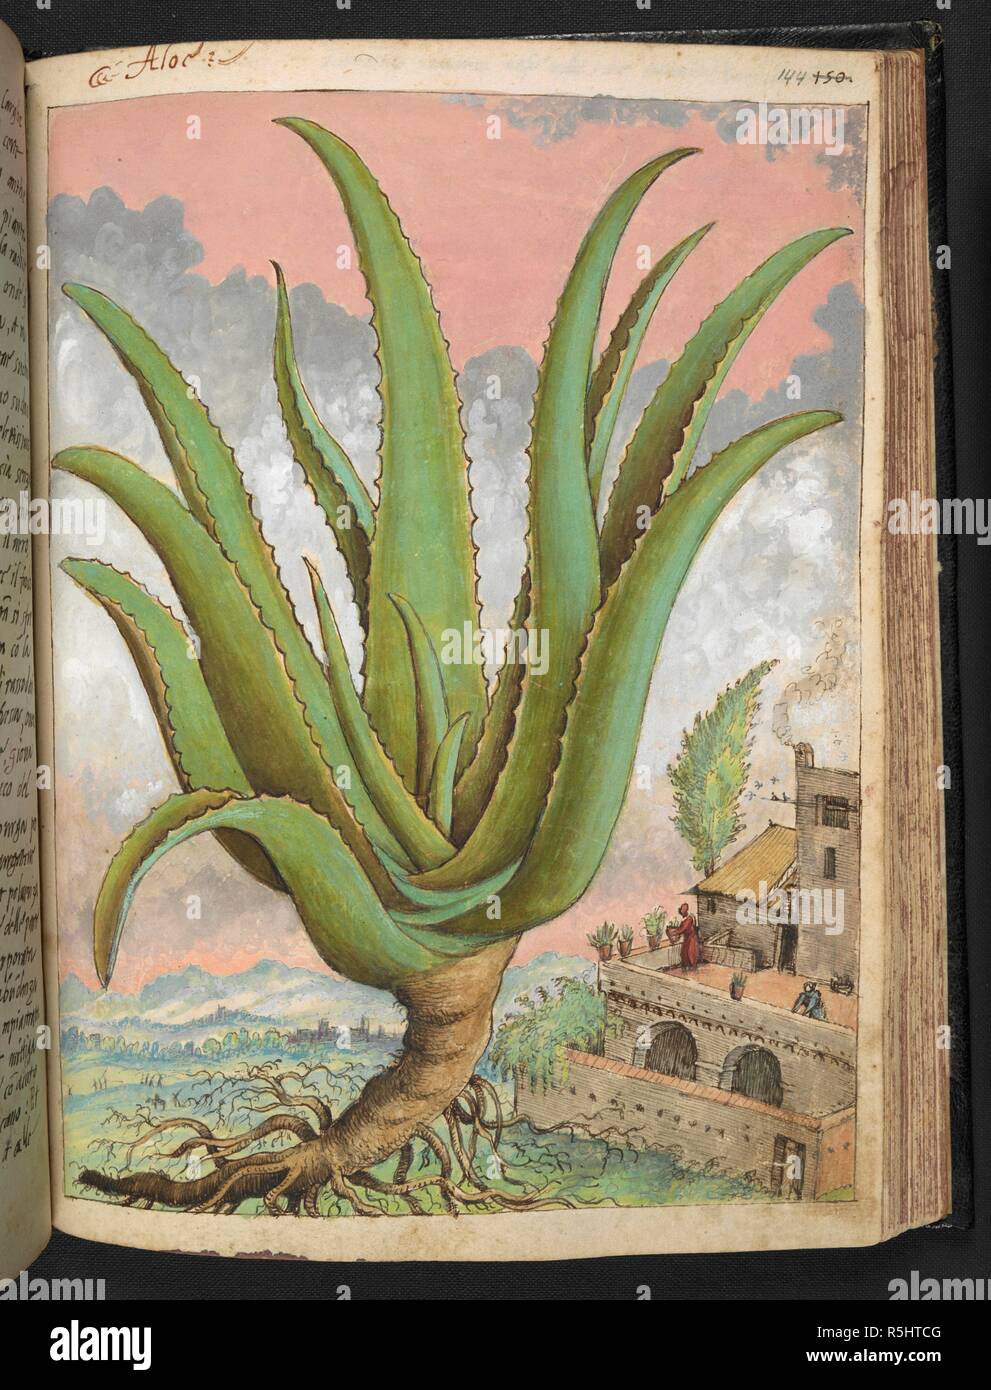 Aloe, scritto anche AloÃ", è un genere che contiene oltre 500 specie di fioritura delle piante succulente. Il più conosciuto è specie Aloe vera. Disegni colorati di piante, copiato dalla natura negli Stati Romani, da Gerardo Cybo. Vol. I. Pietro Andrea Mattioli, medico, di Siena: estratti dalla sua edizione di Dioscoride' 'de re Medica':. L'Italia, c. 1564-1584. Fonte: Aggiungi. 22332 f.144. Lingua: Italiano. Autore: Cybo, Gheraldo. Foto Stock